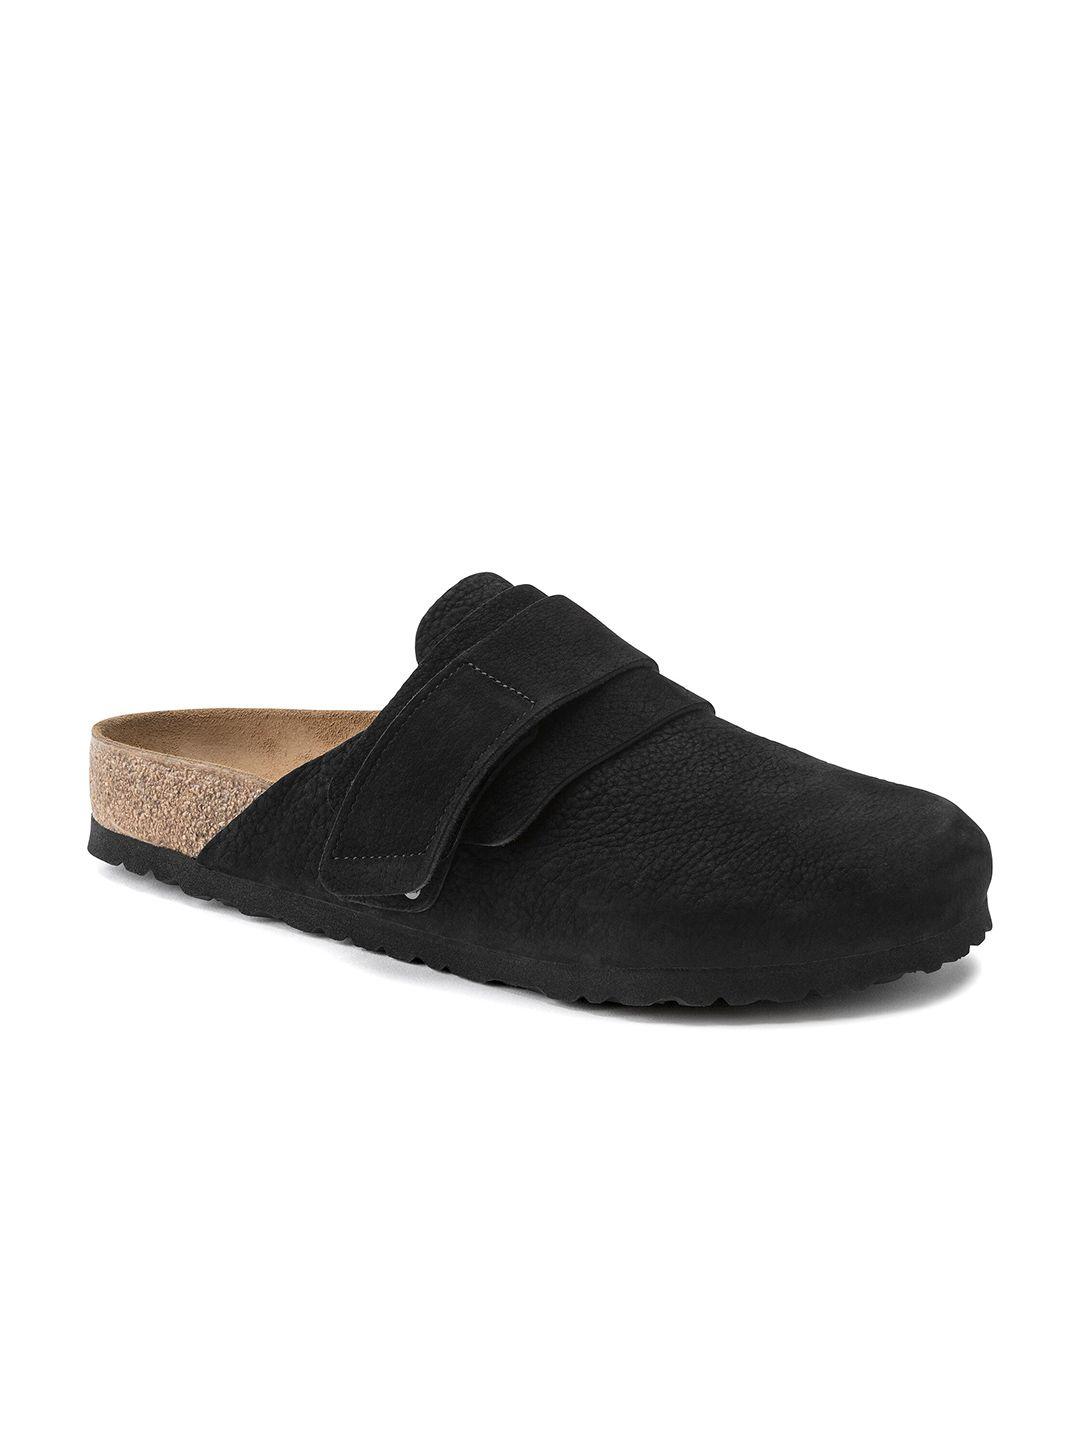 birkenstock men regular width black shoe-style sandals